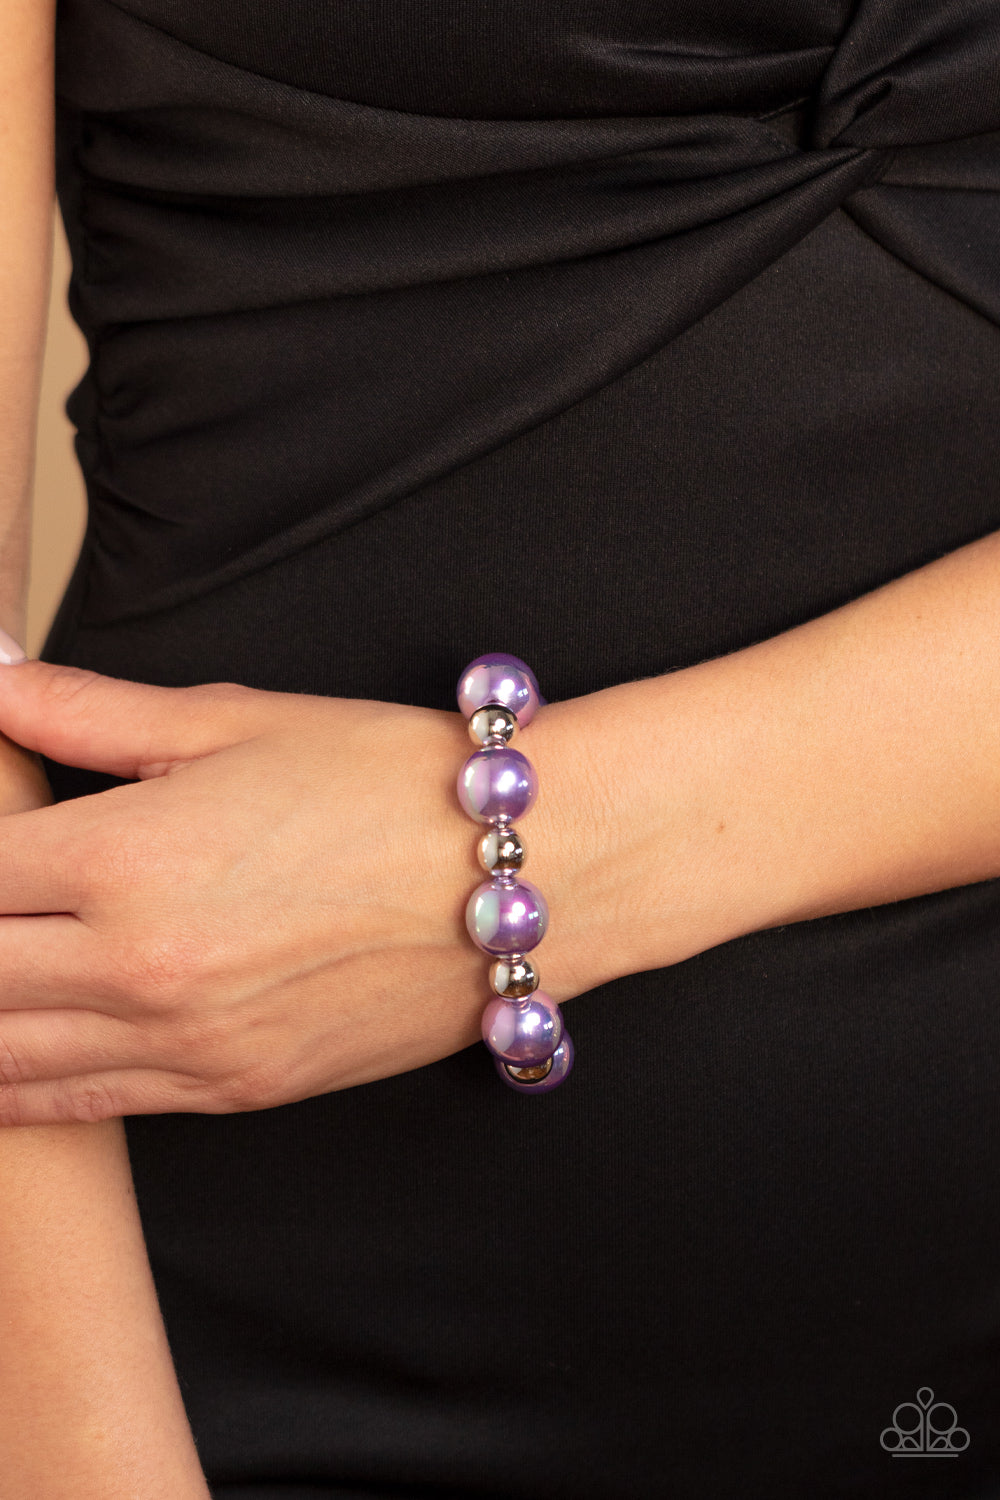 A DREAMSCAPE Come True - purple - Paparazzi bracelet